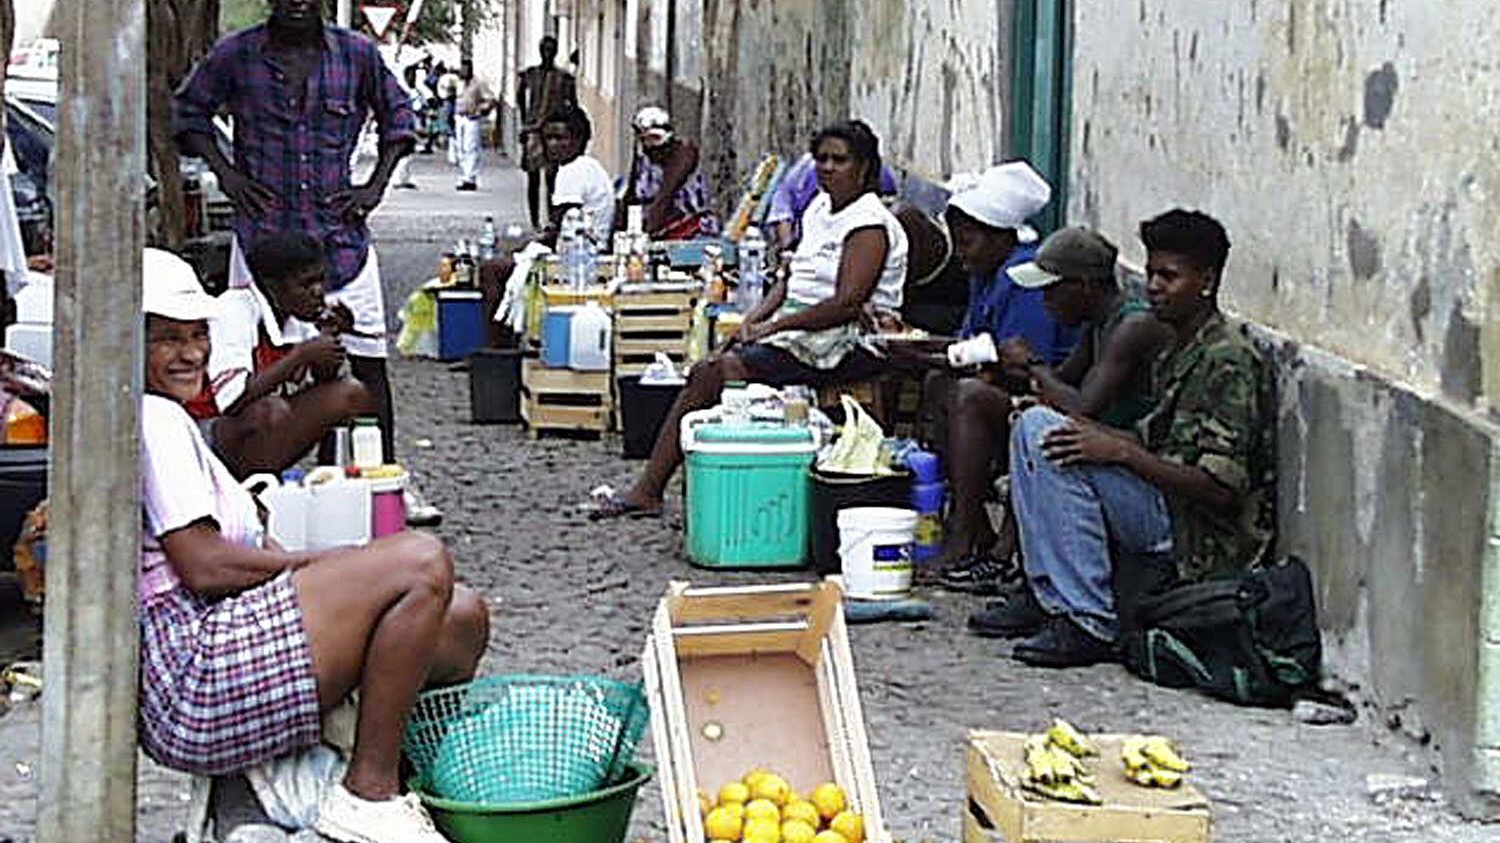 O Governo de Cabo Verde em parceria com a Igreja Católica e outras entidades vão definir passos para minimizar a pobreza